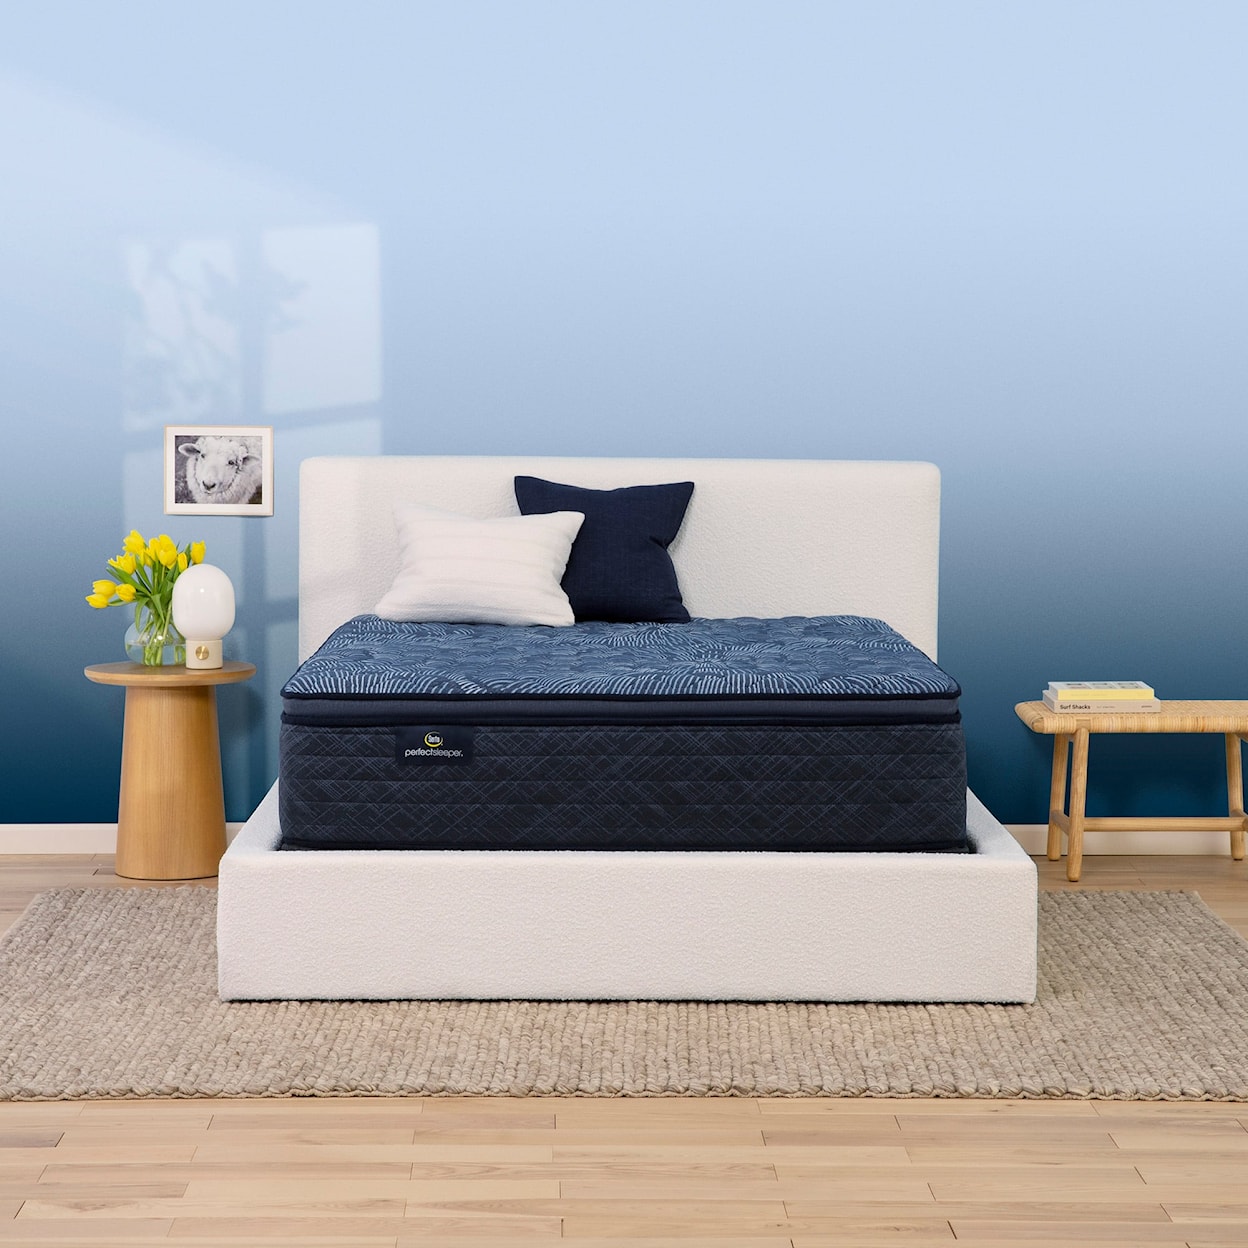 Serta Cobalt Calm 14.5" Firm Pillow Top Twin Mattress